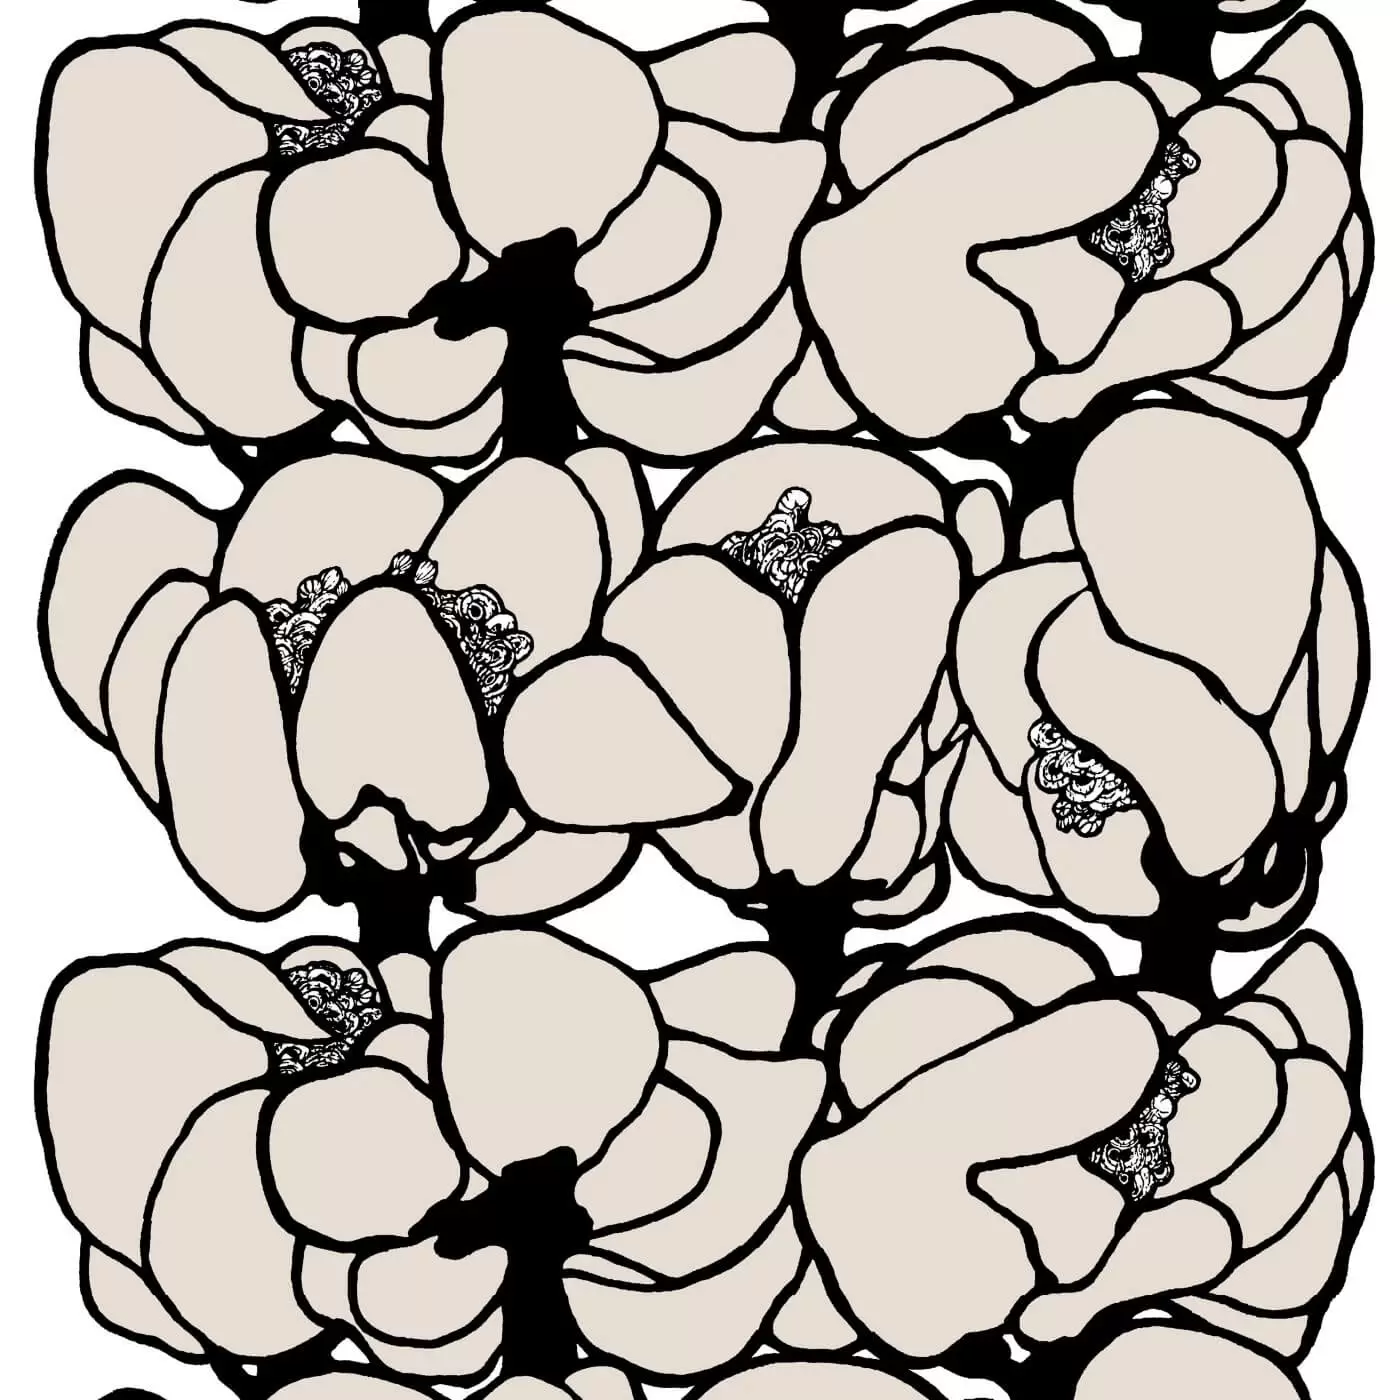 Zasłony design MAKEBA. Fragment wzoru z dużymi kwiatami w odcieniu koloru beżowego i czarnego. Nowoczesne wzornictwo, styl skandynawski